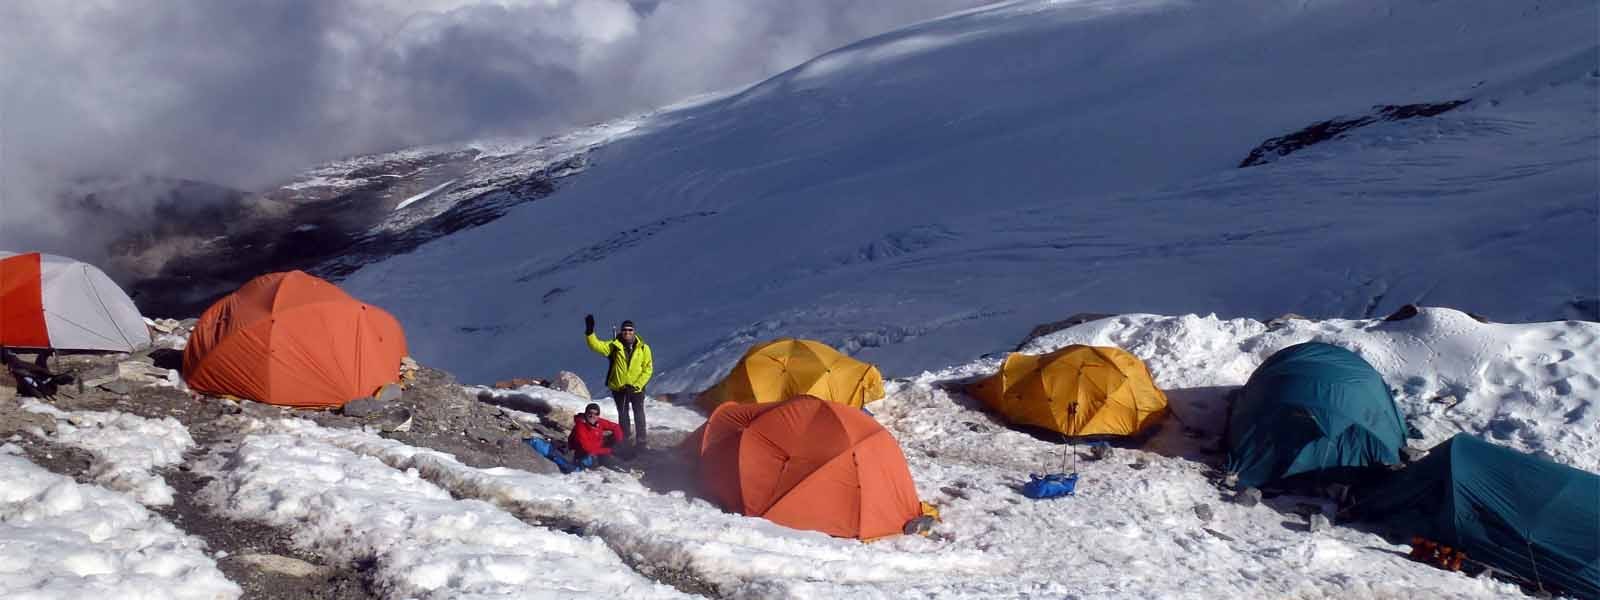 Mount Ama Dablam Expedition